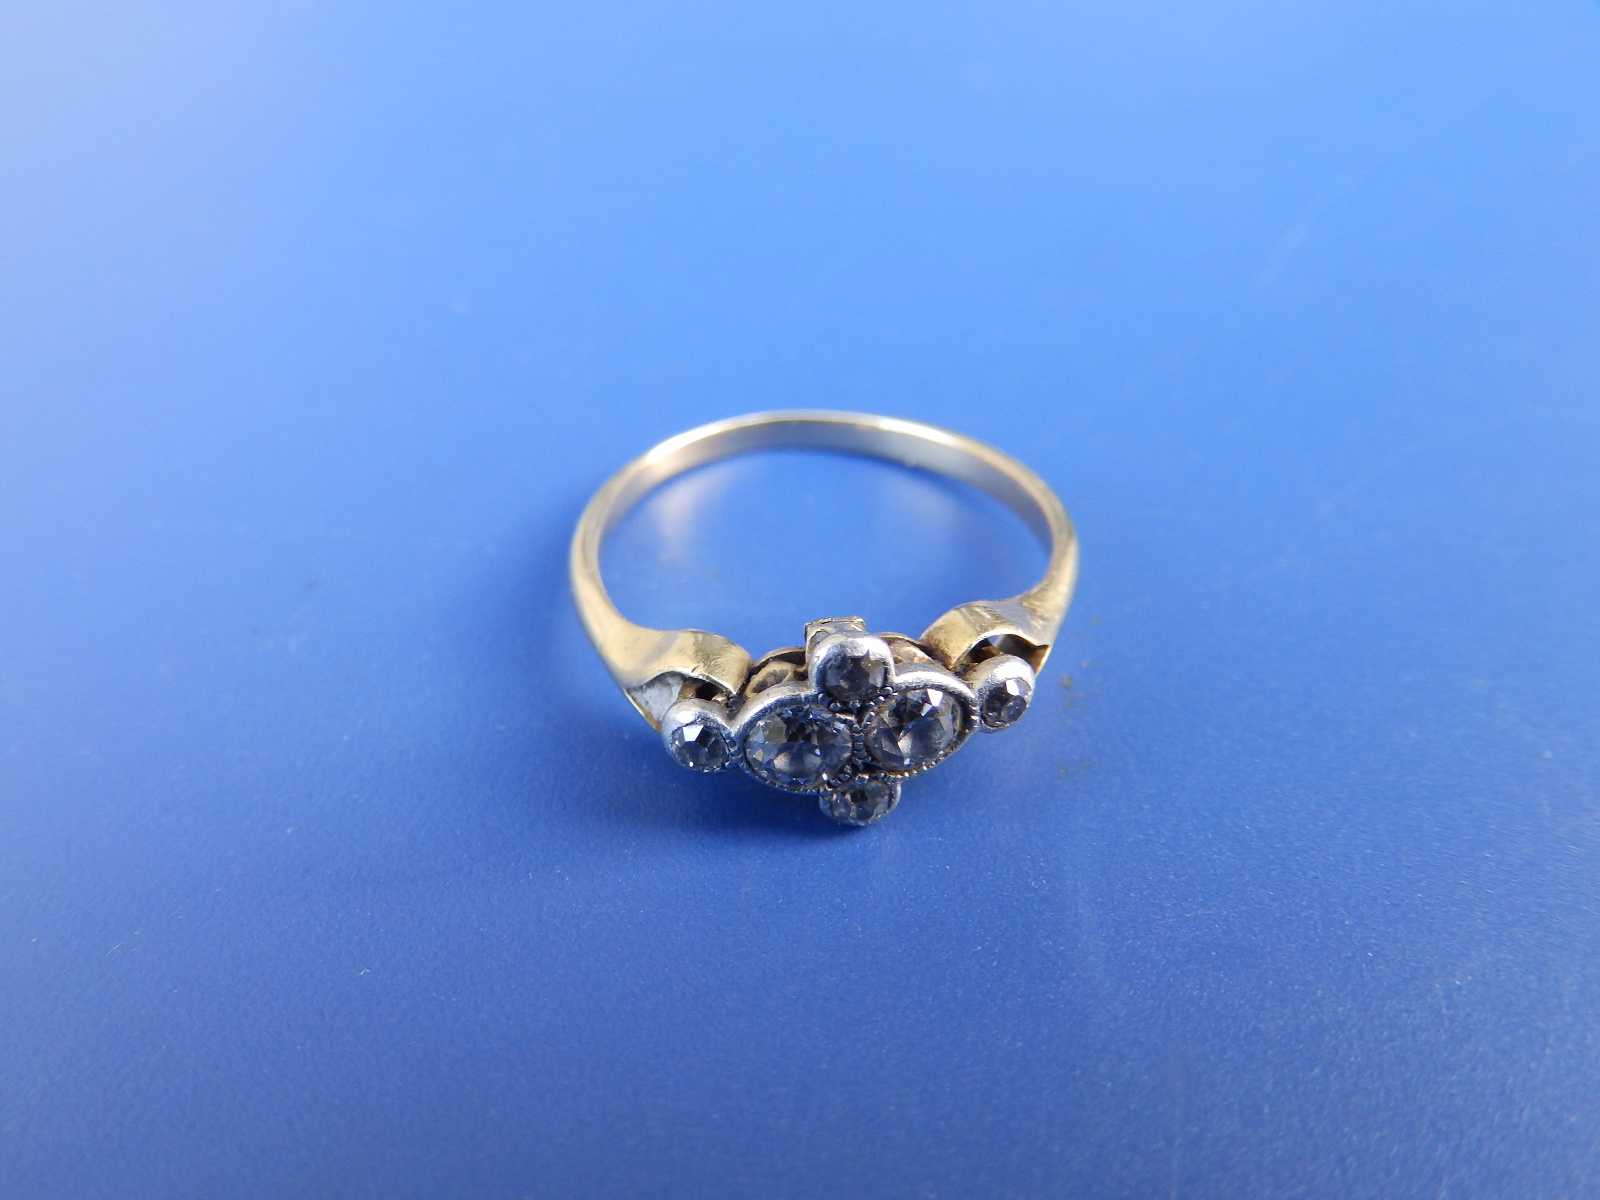 An old cut diamond dress ring - shank misshapen. Finger size approx J.